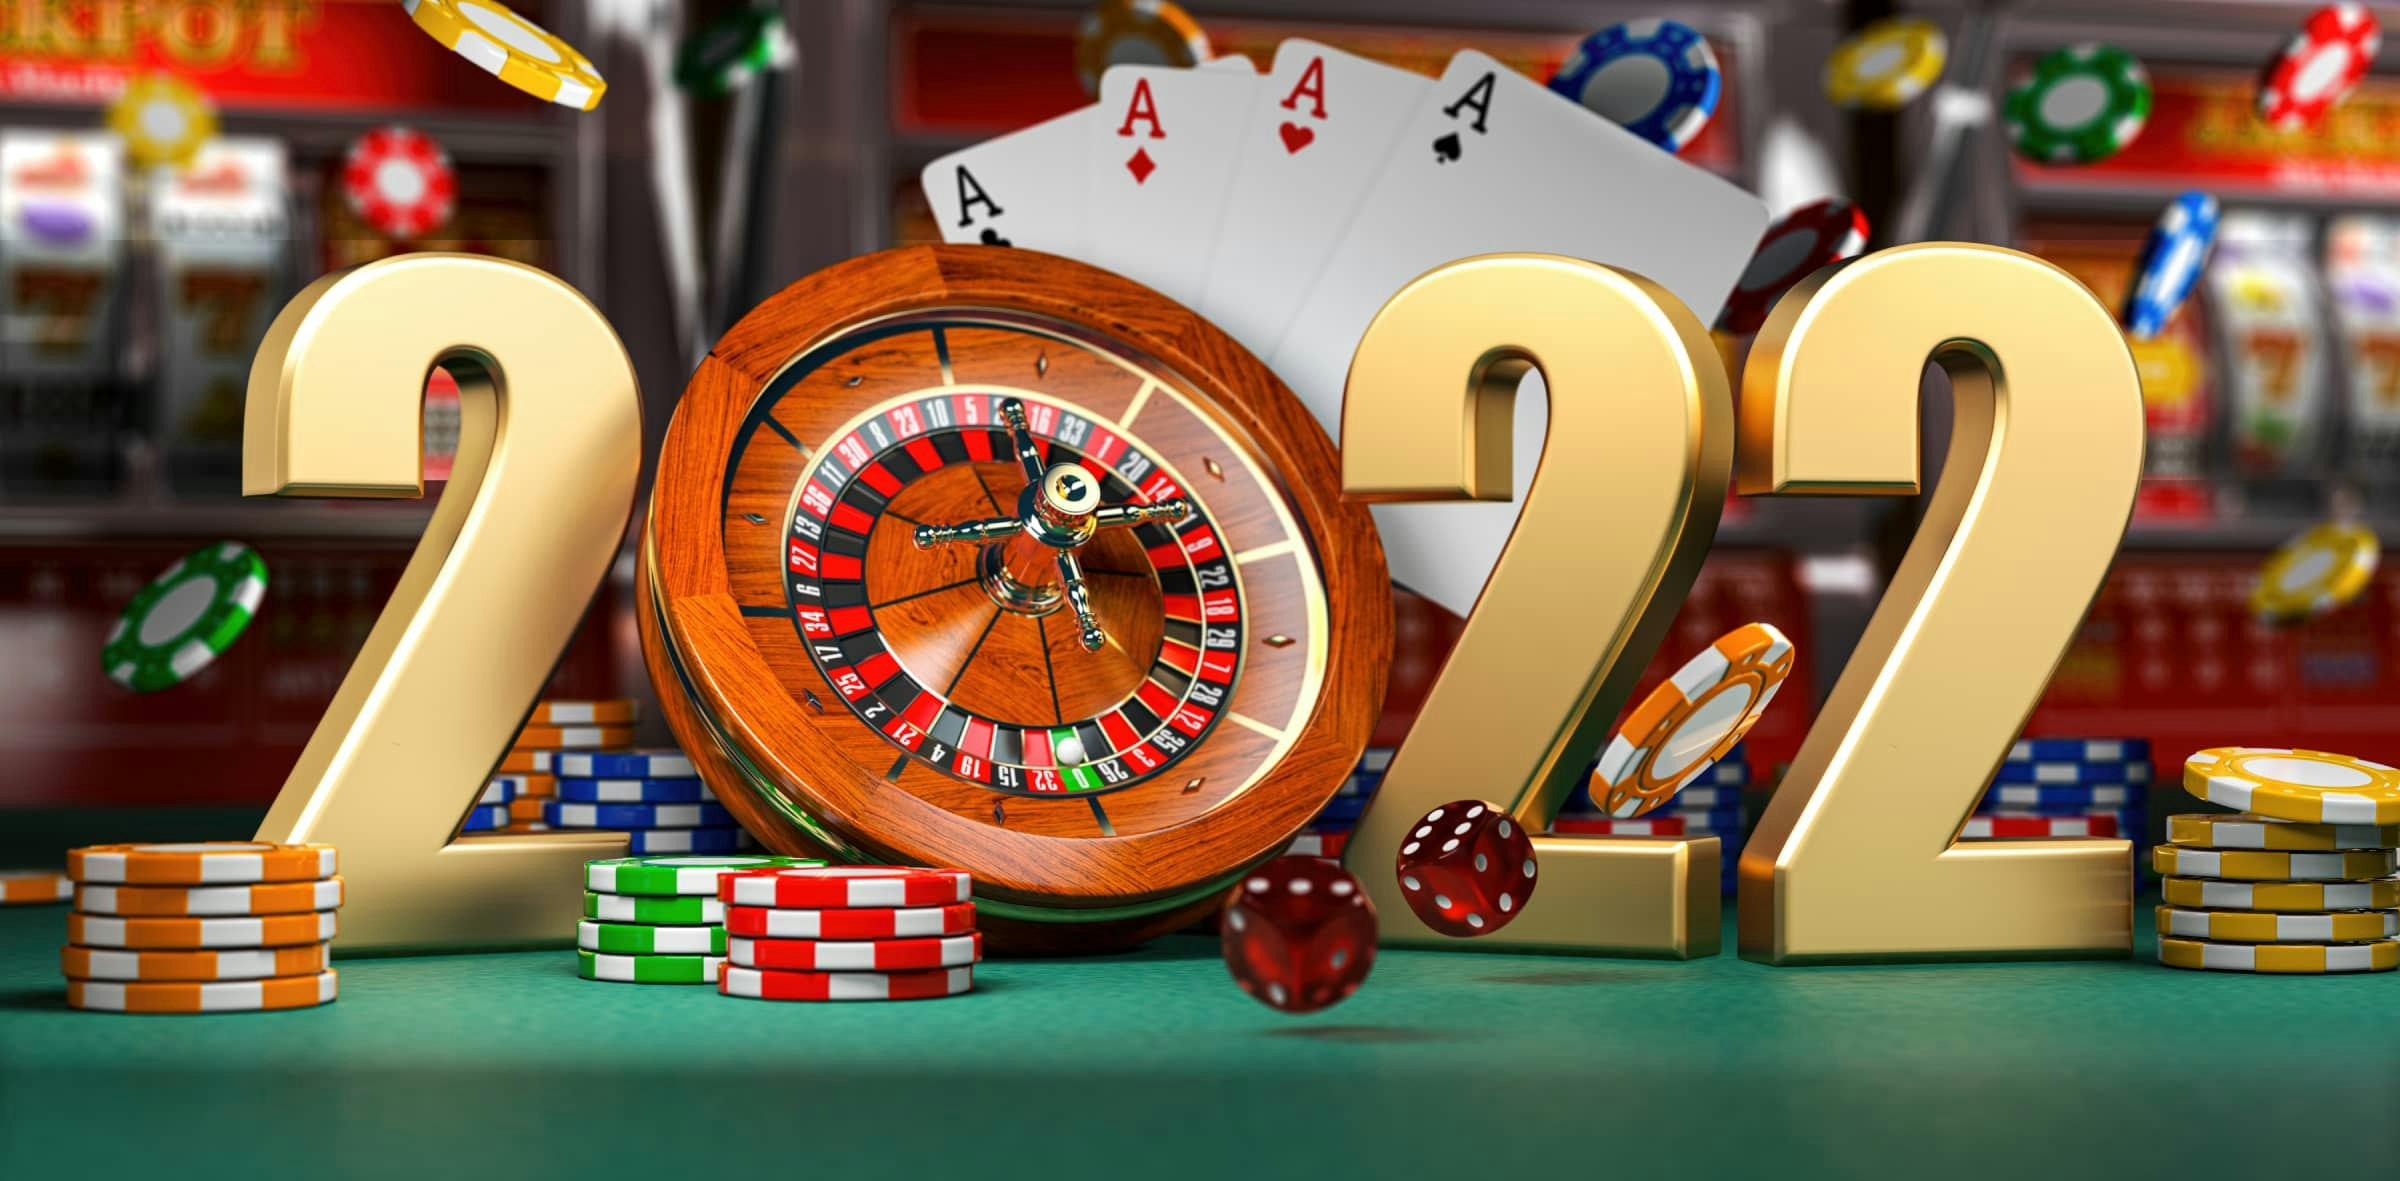 Lo último en casinos online para este 2022